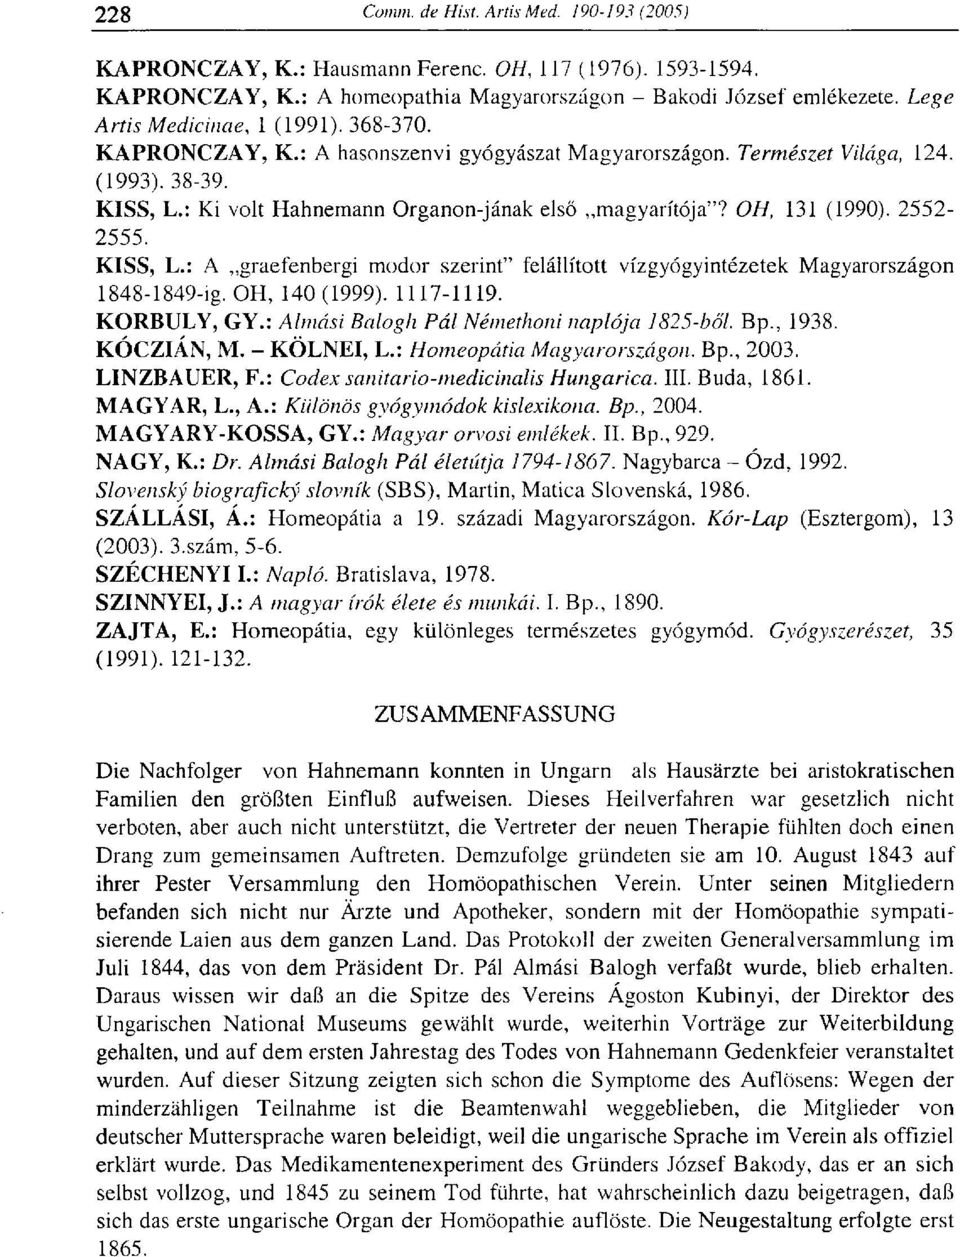 OH, 140(1999). 1117-1119. KORBULY, GY.: Almási Balogh Pál Némethoni naplója 1825-ből. Bp., 1938. KÓCZIÁN, M. - KÖLNÉI, L.: Homeopátia Magyarországon. Bp., 2003. LINZBAUER, F.